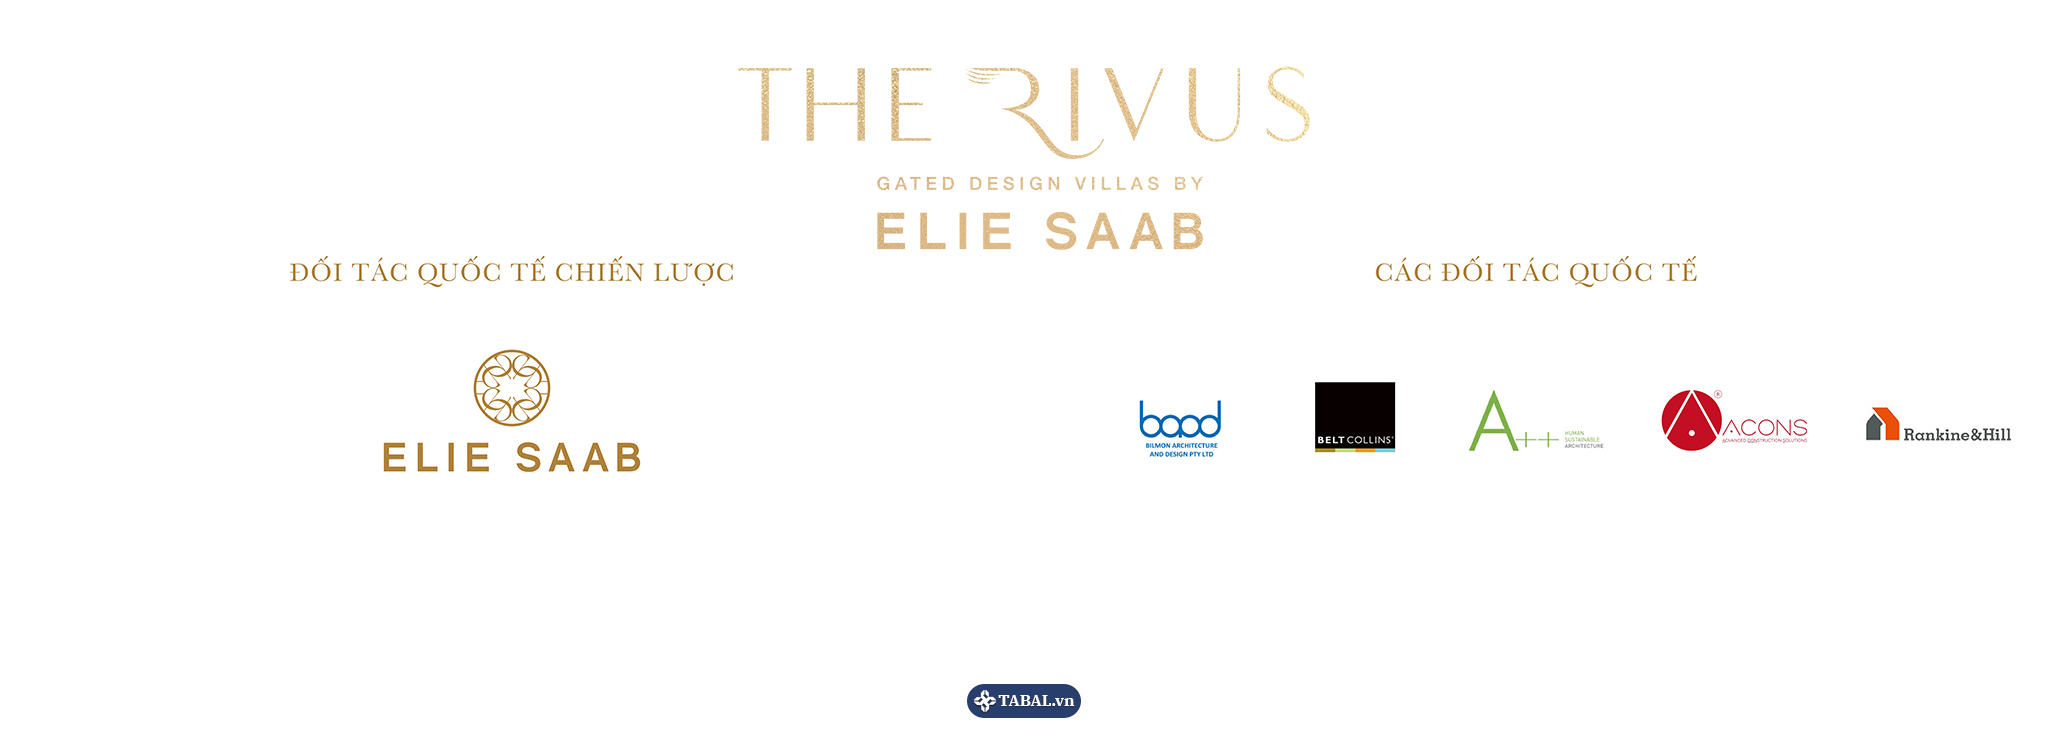 The Rivus - Elie Saab và đối tác quốc tế